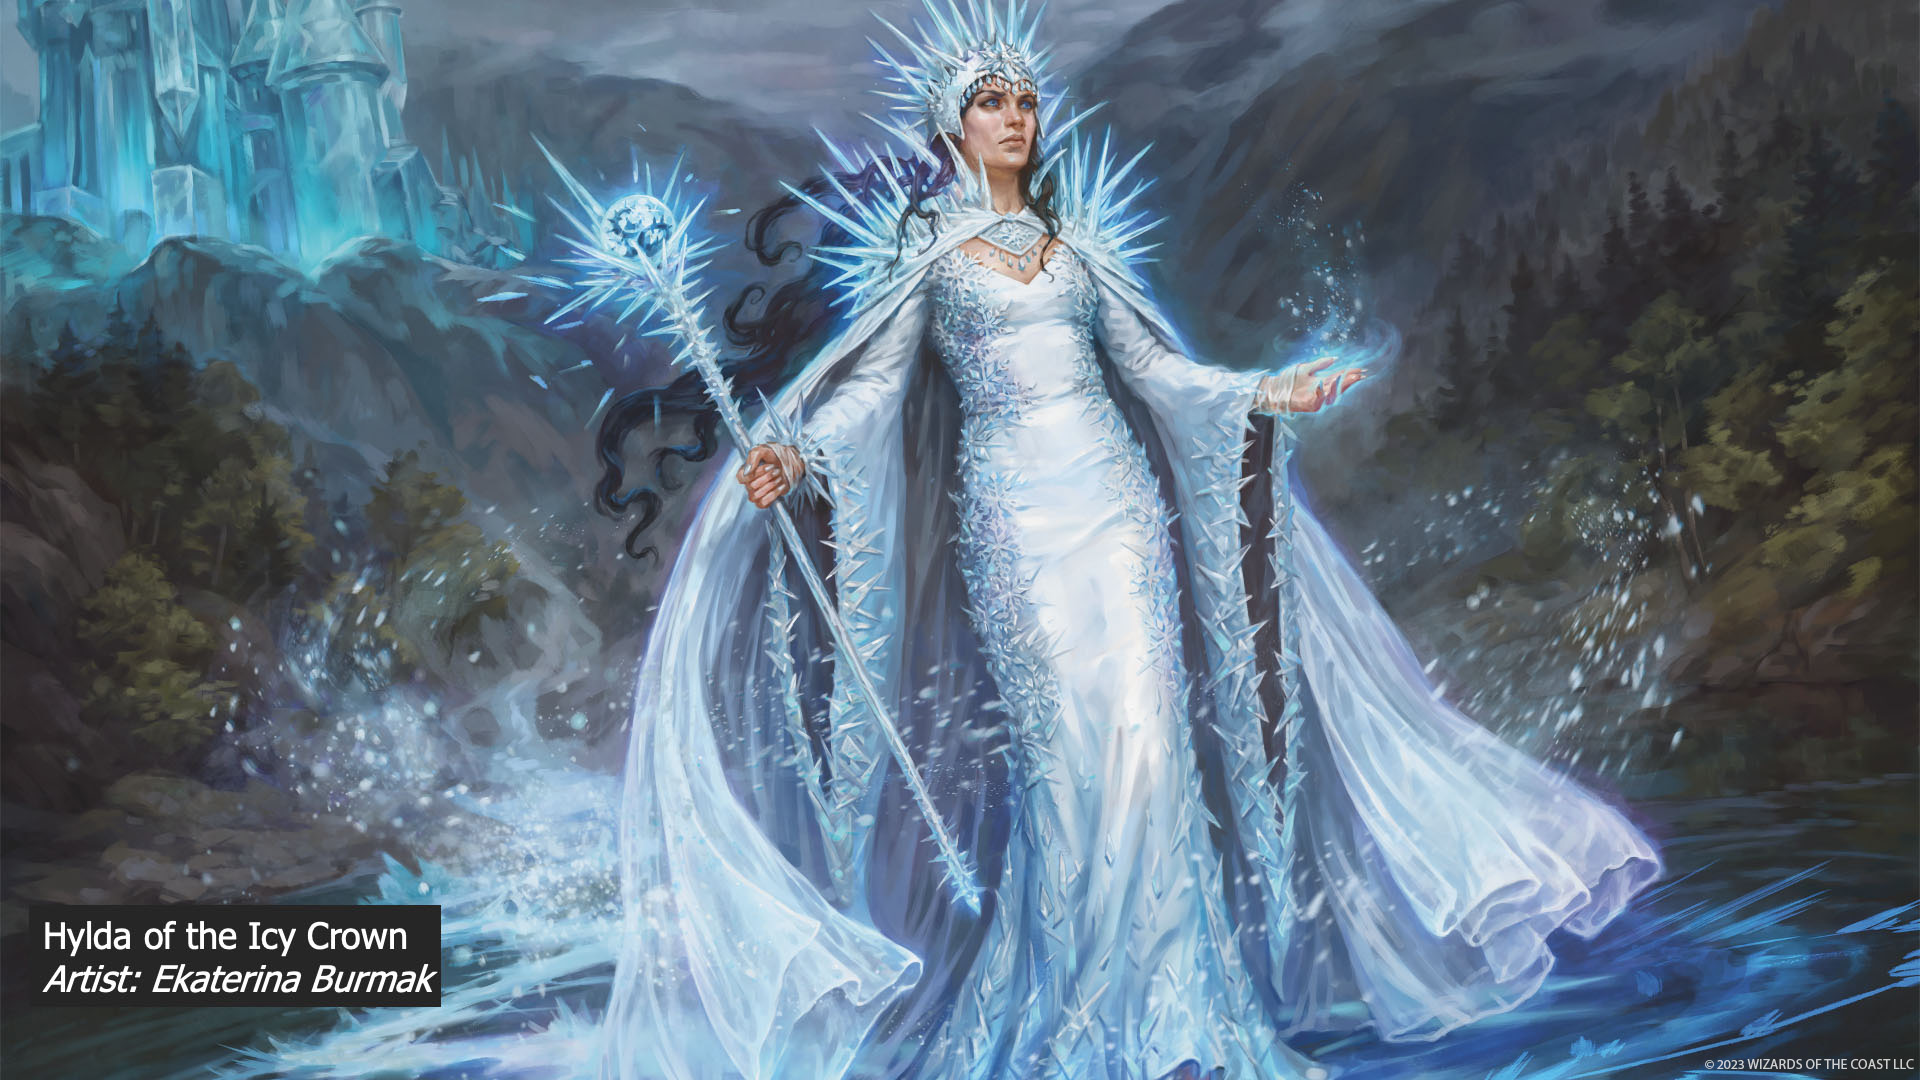 Commander Deck of the Week: Hylda of the Icy Crown